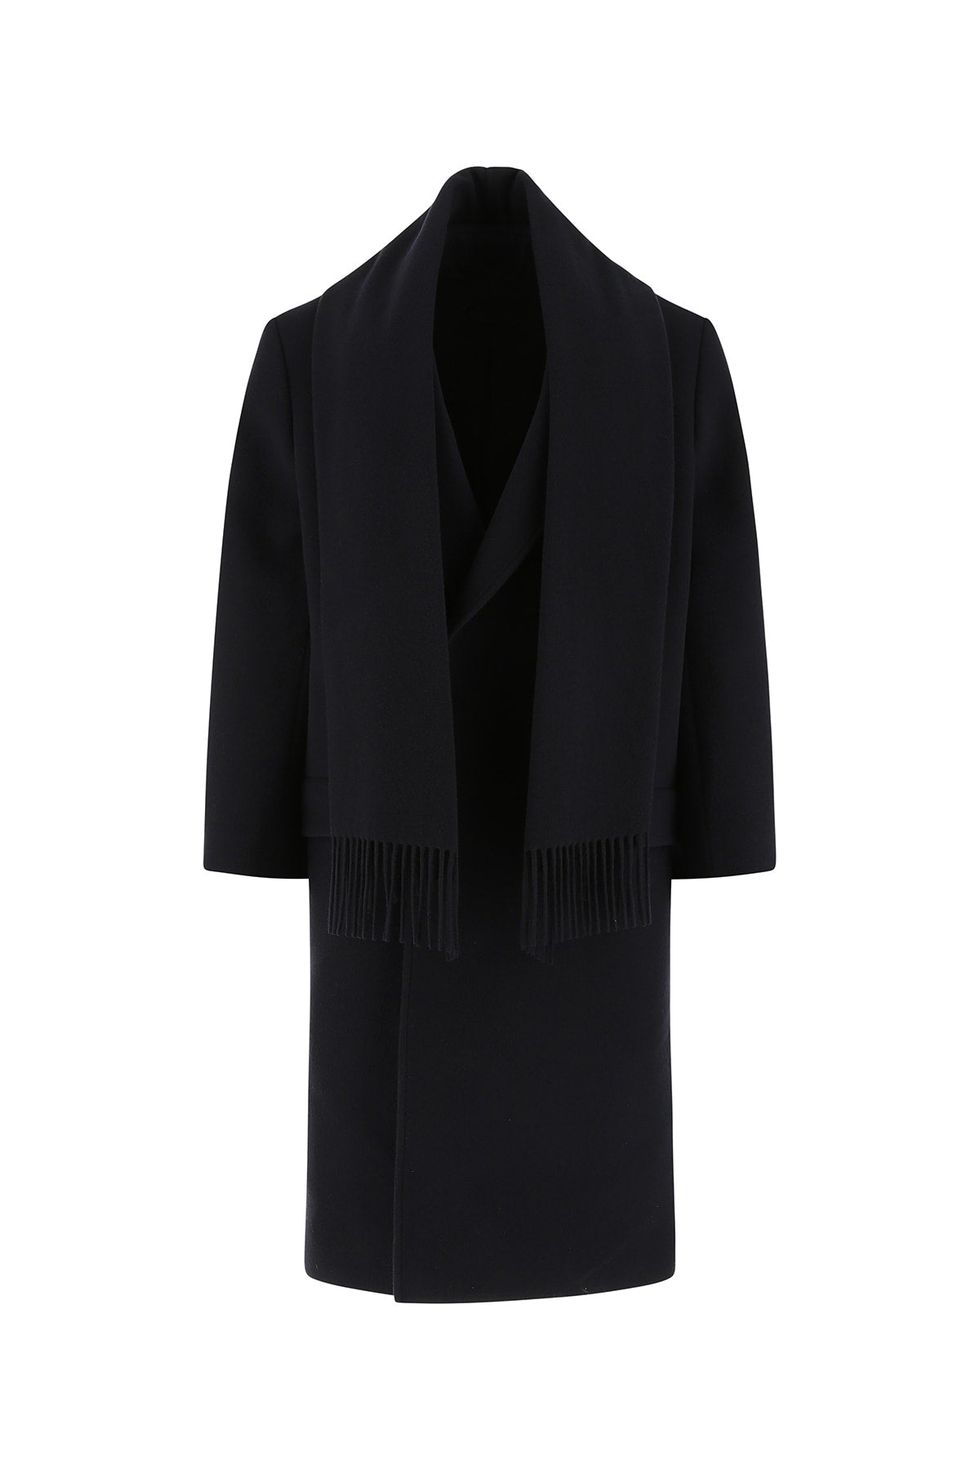 圍巾外套大衣品牌款式推薦：Balenciaga長版圍巾大衣